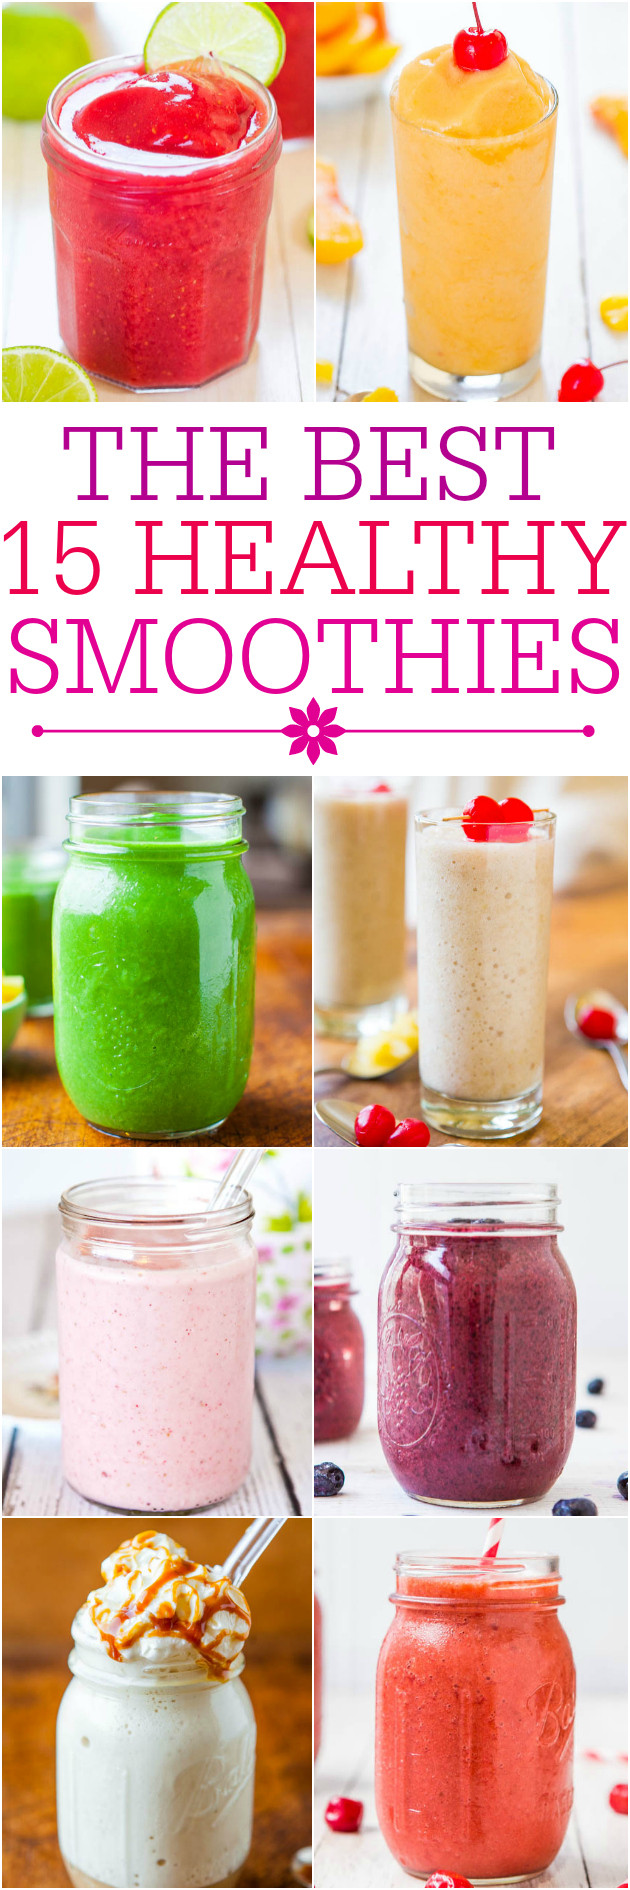 Best Fruit Smoothie Recipes
 Frozen Fruit Smoothie with Yogurt 3 Ingre nts